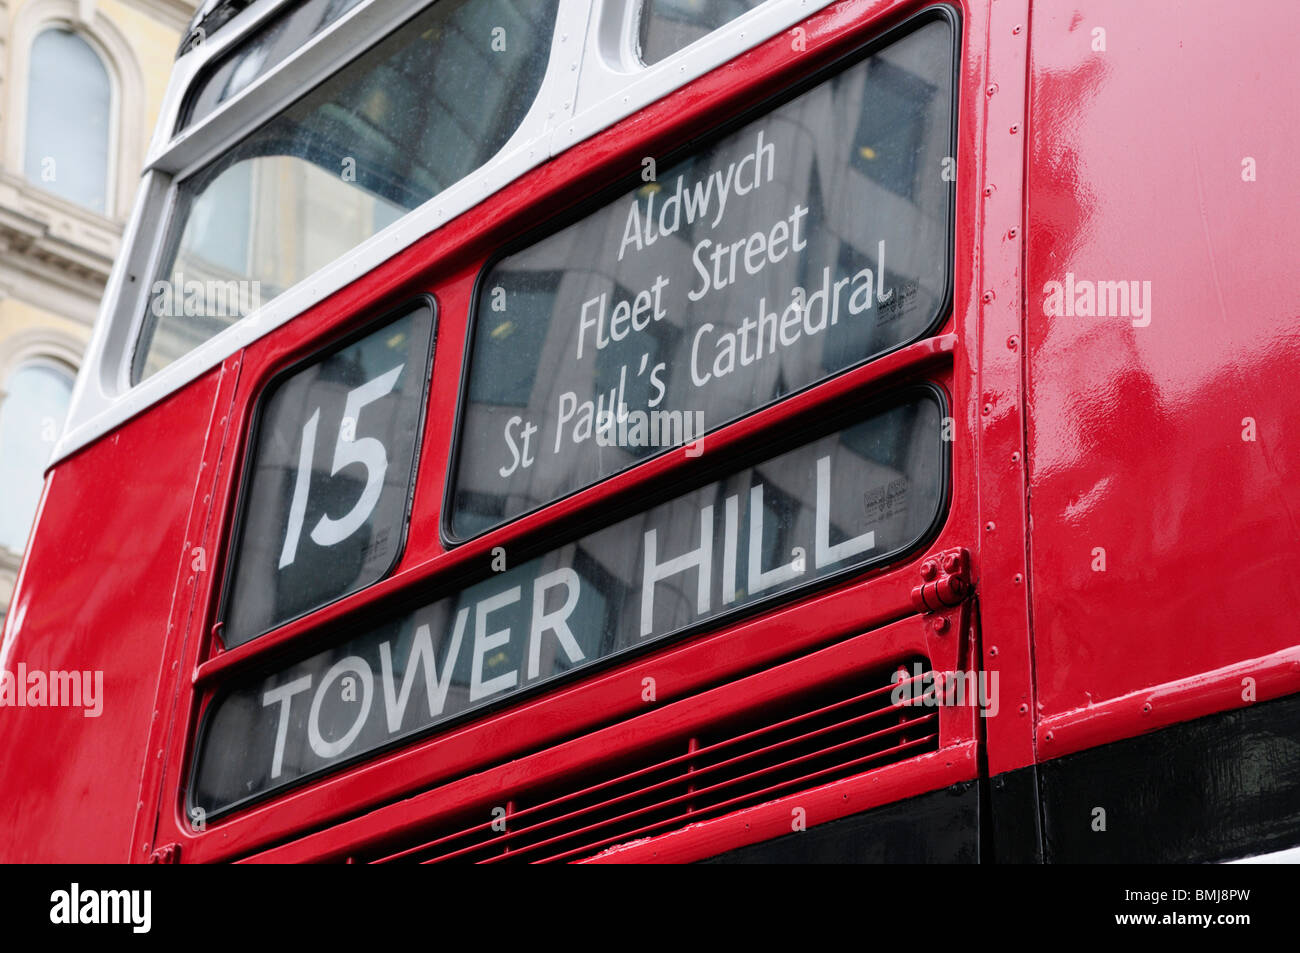 Einen alten Routemaster-London-Bus auf Geschichtsroute 15 zwischen Trafalgar Square und Tower Hill, London England UK Stockfoto